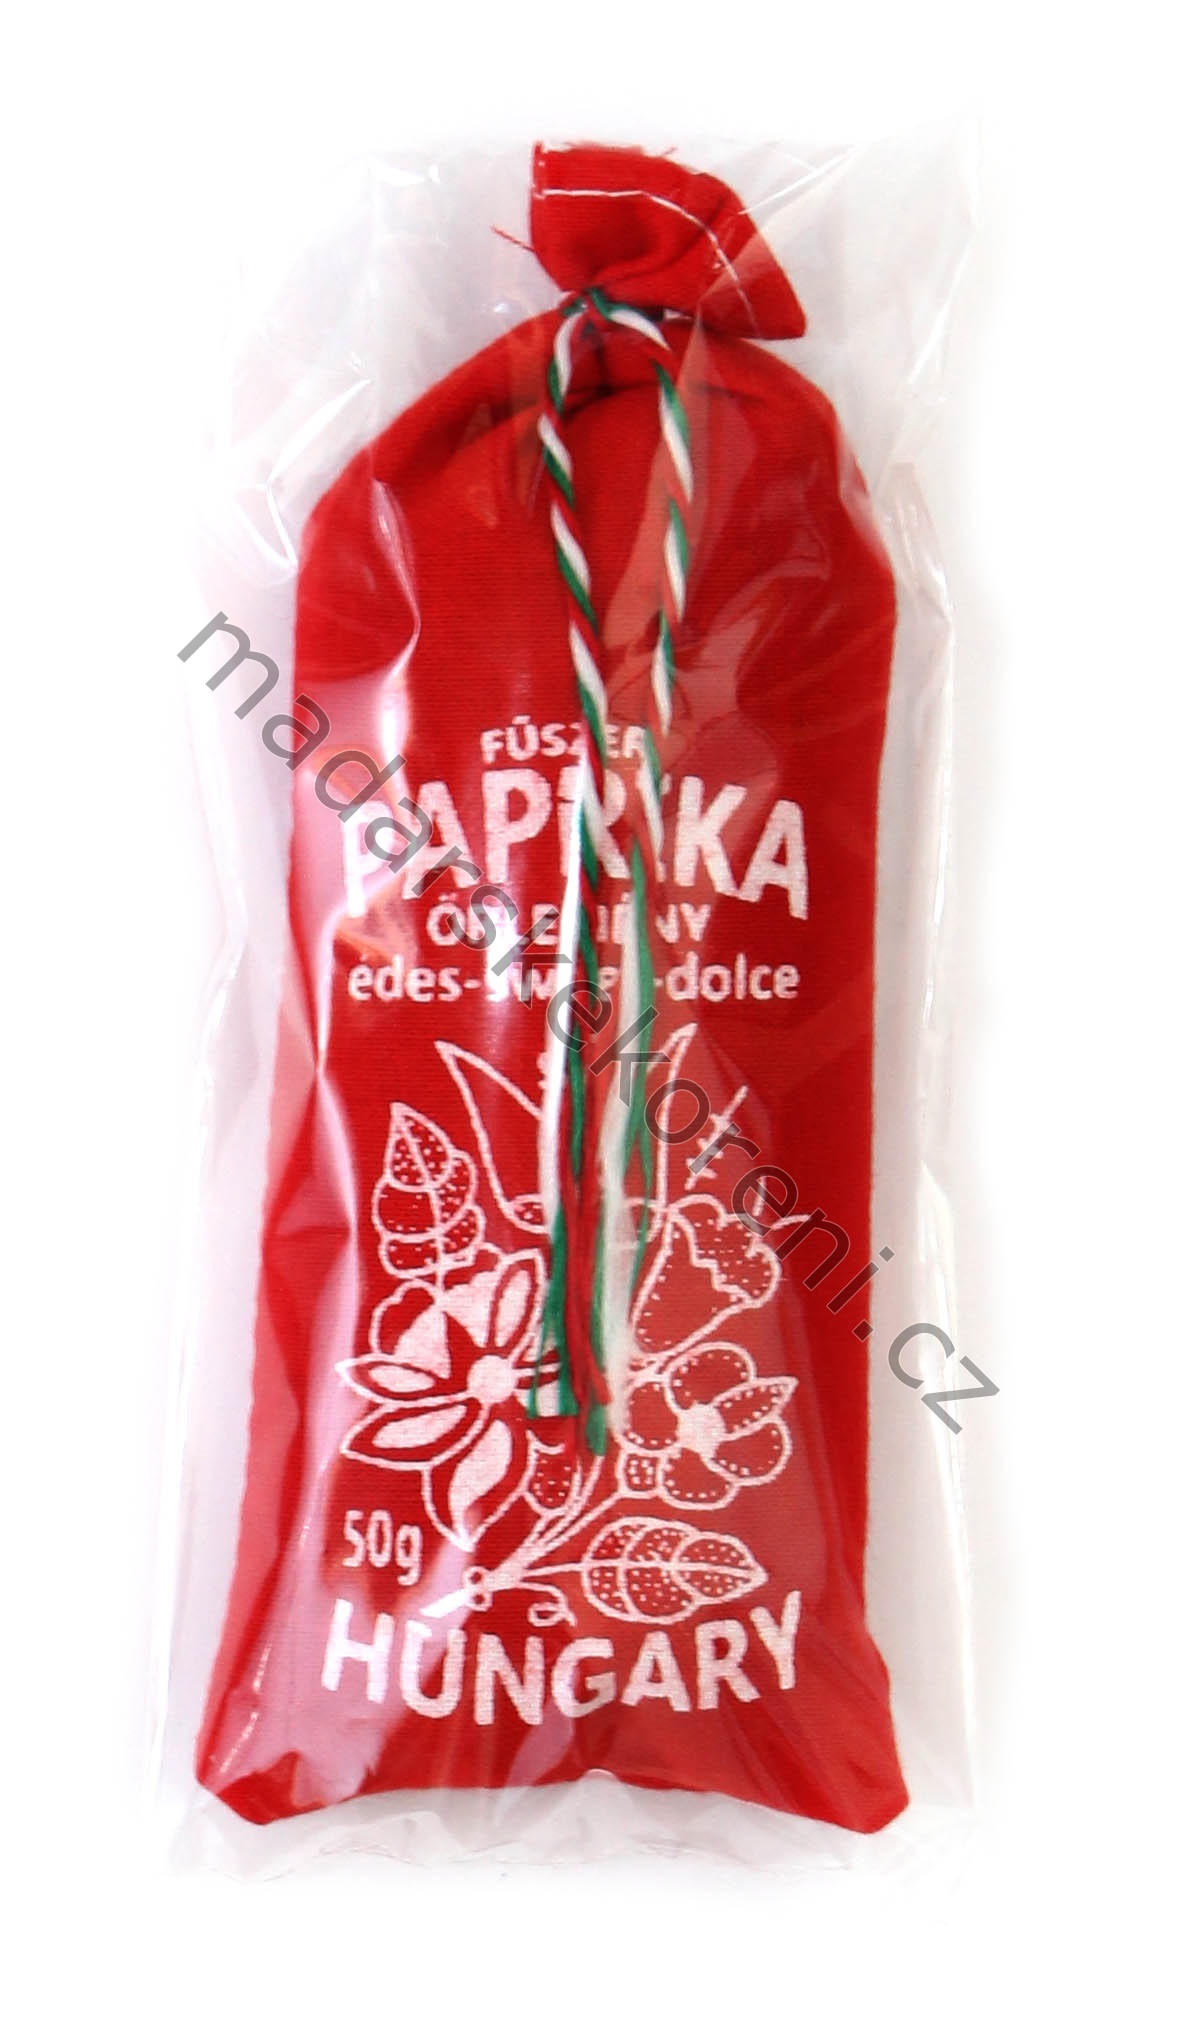 Maďarská paprika sladká v lněném pytlíku - 50g